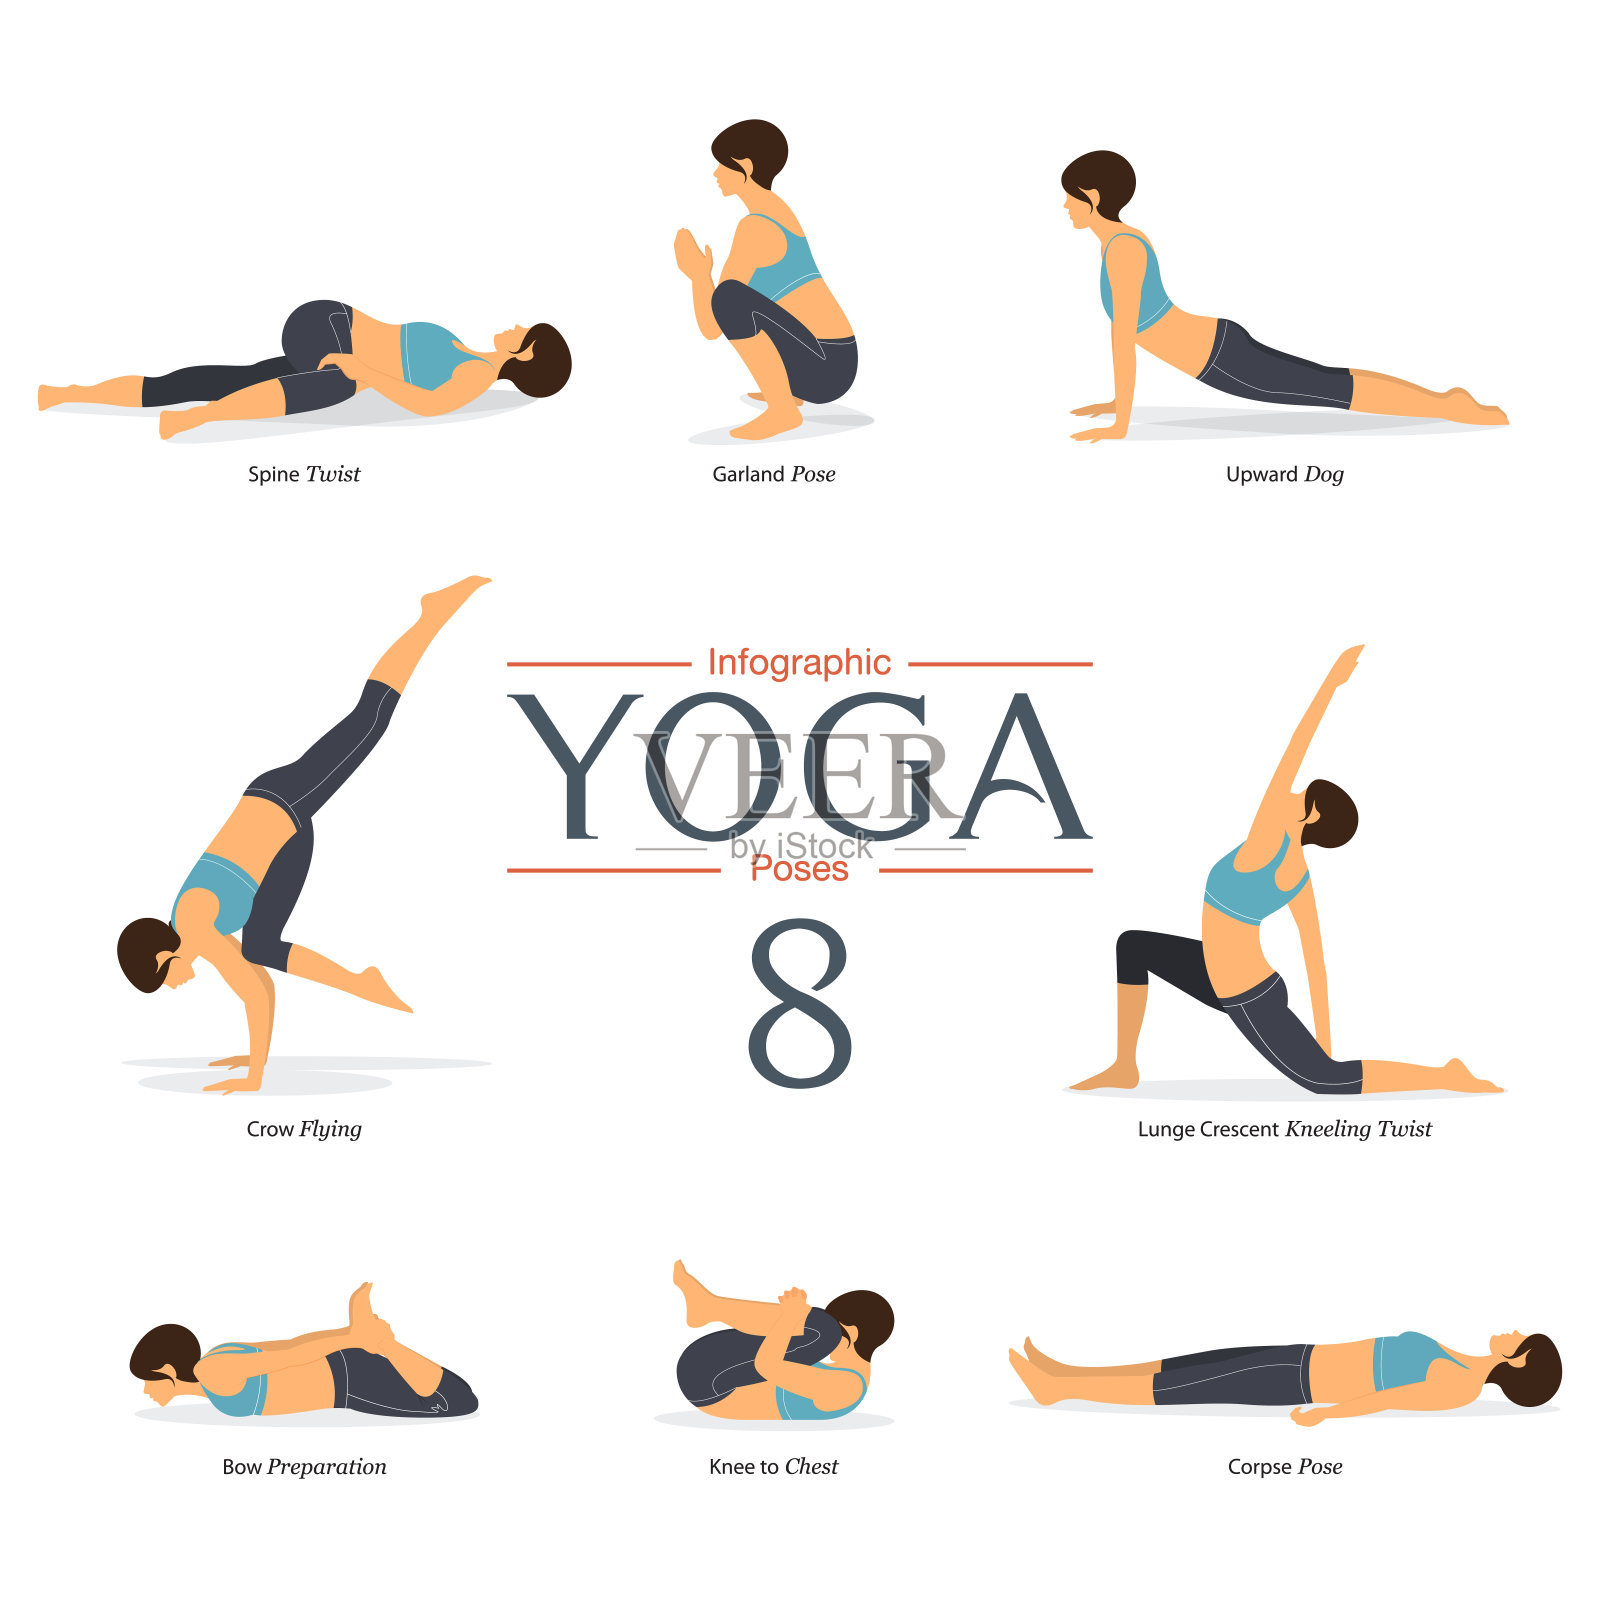 一套8瑜伽姿势在平面设计。女人身材锻炼蓝色运动服和黑色瑜伽裤瑜伽信息图。向量插画图片素材